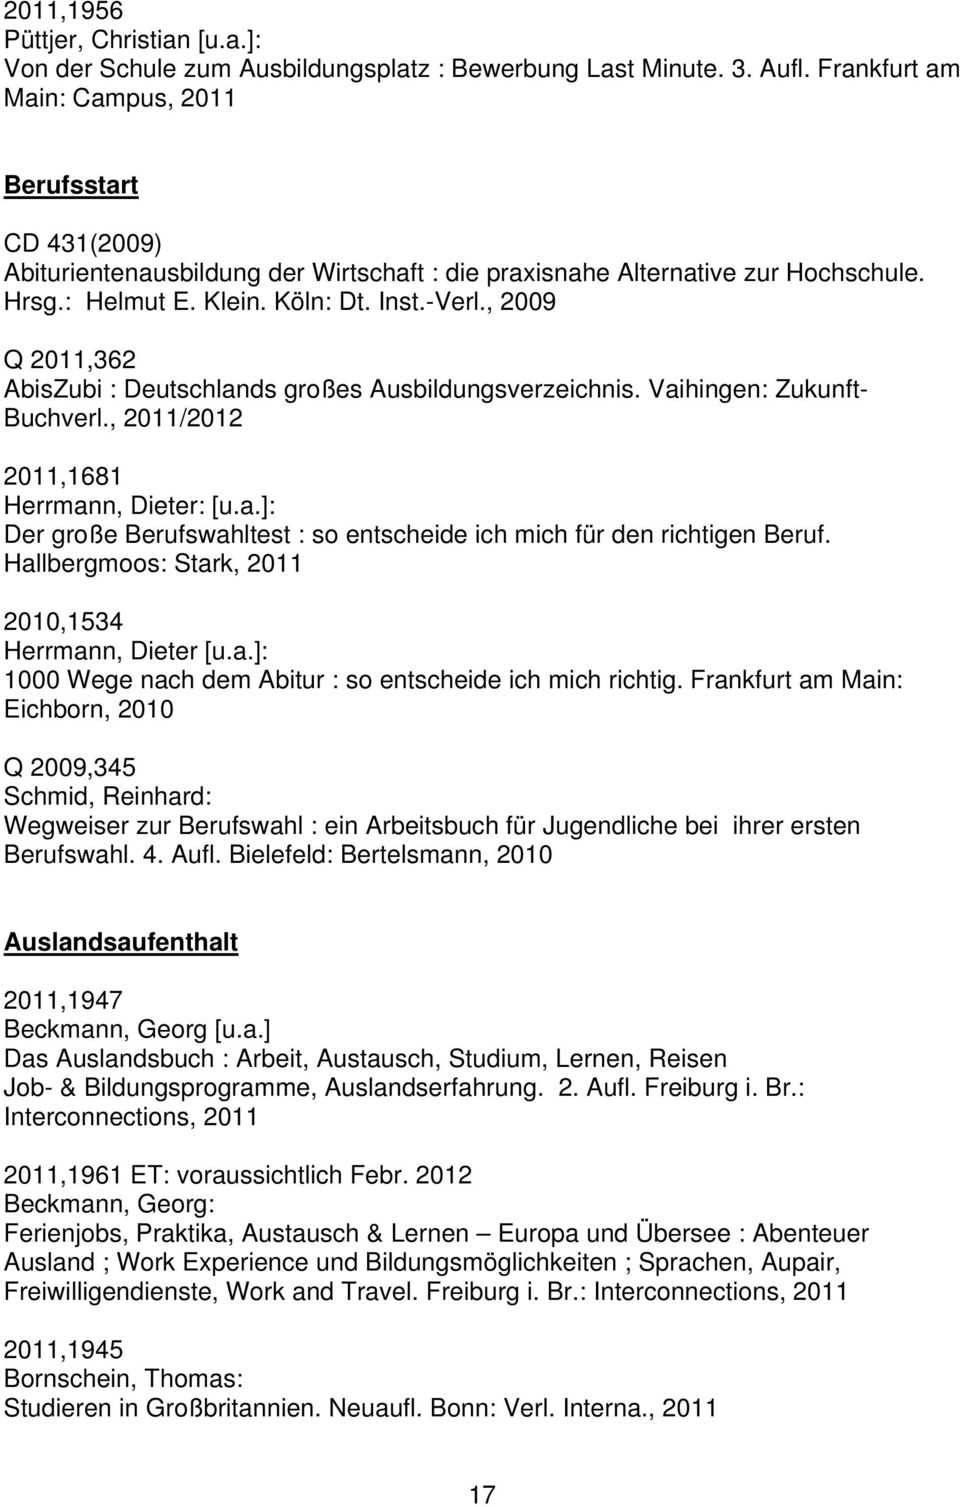 , 2009 Q 2011,362 AbisZubi : Deutschlands großes Ausbildungsverzeichnis. Vaihingen: Zukunft- Buchverl., 2011/2012 2011,1681 Herrmann, Dieter: [u.a.]: Der große Berufswahltest : so entscheide ich mich für den richtigen Beruf.